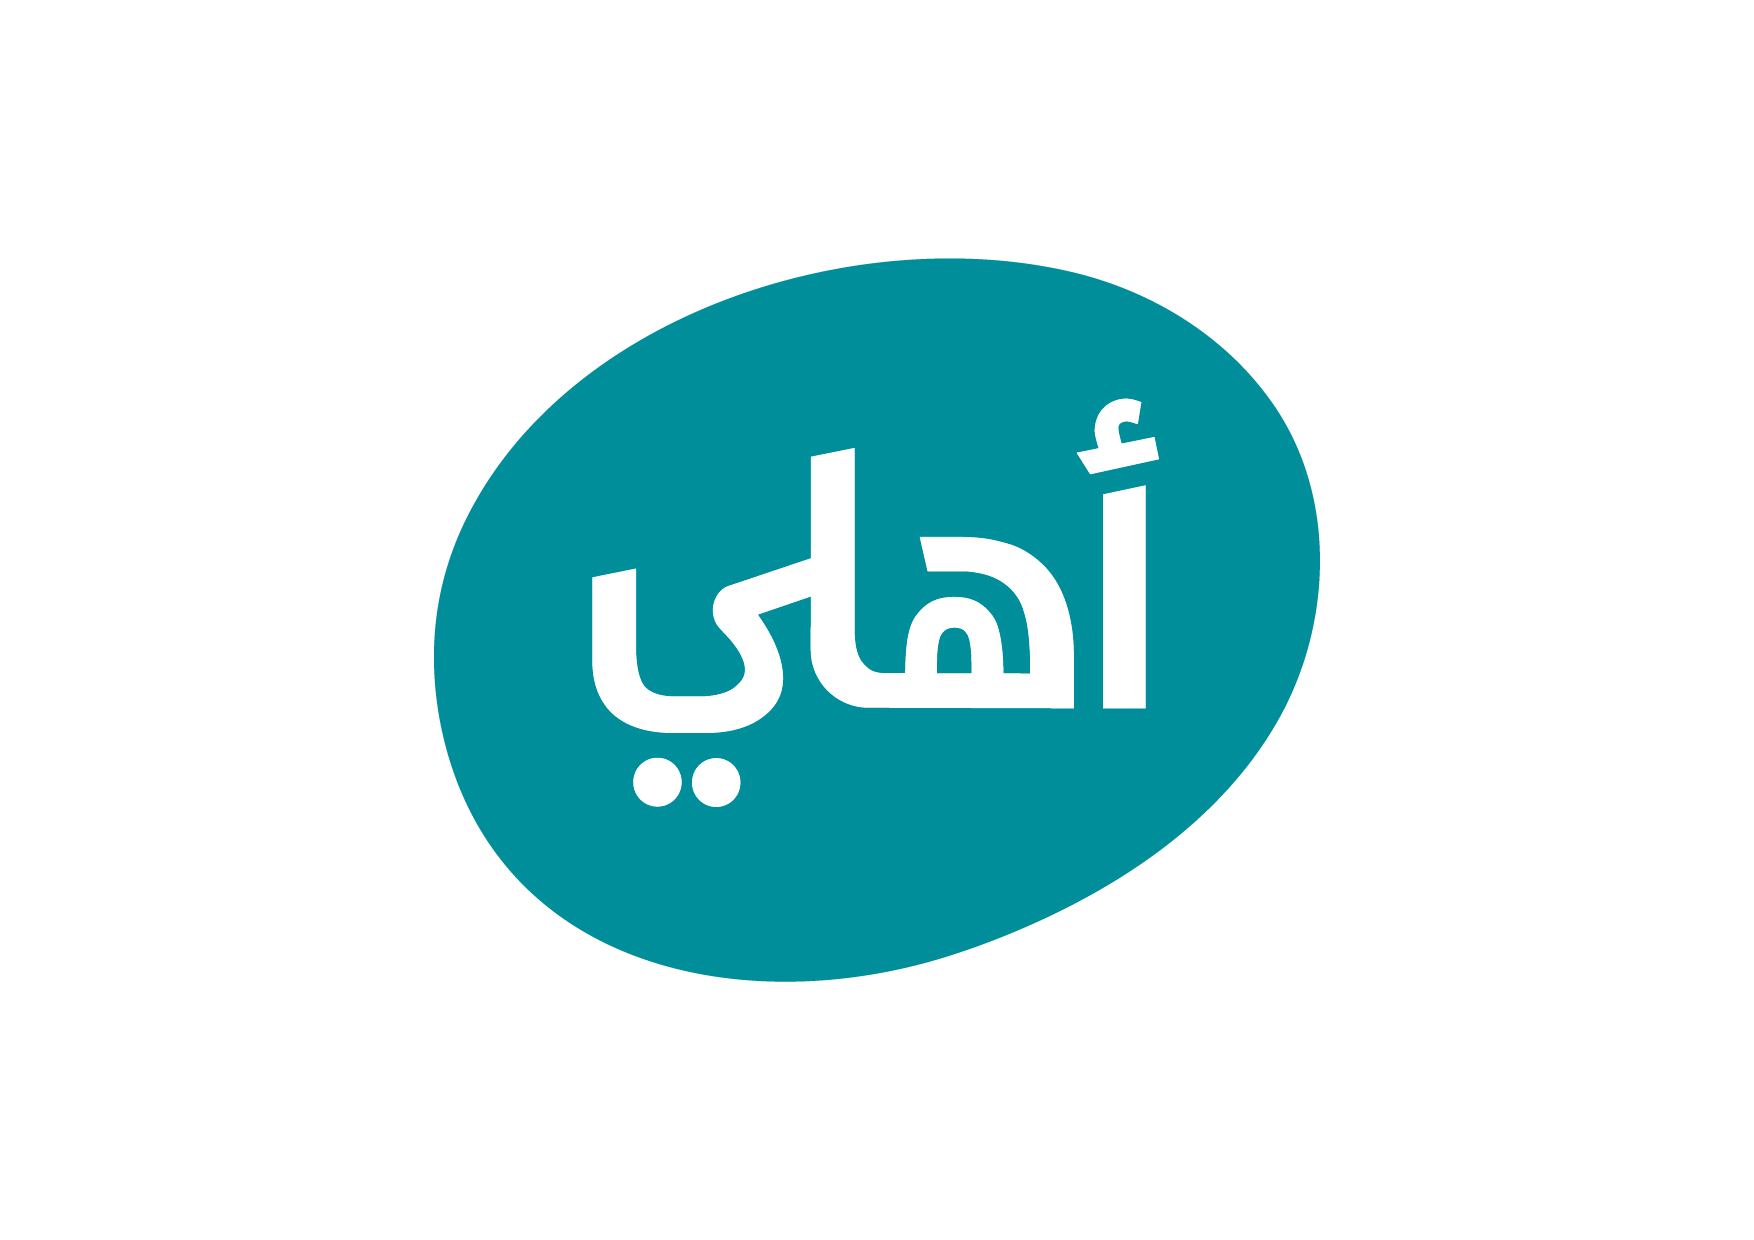 البنك الأهلي الأردني  يوفر خدمةApple Pay لعملائه في الأردن